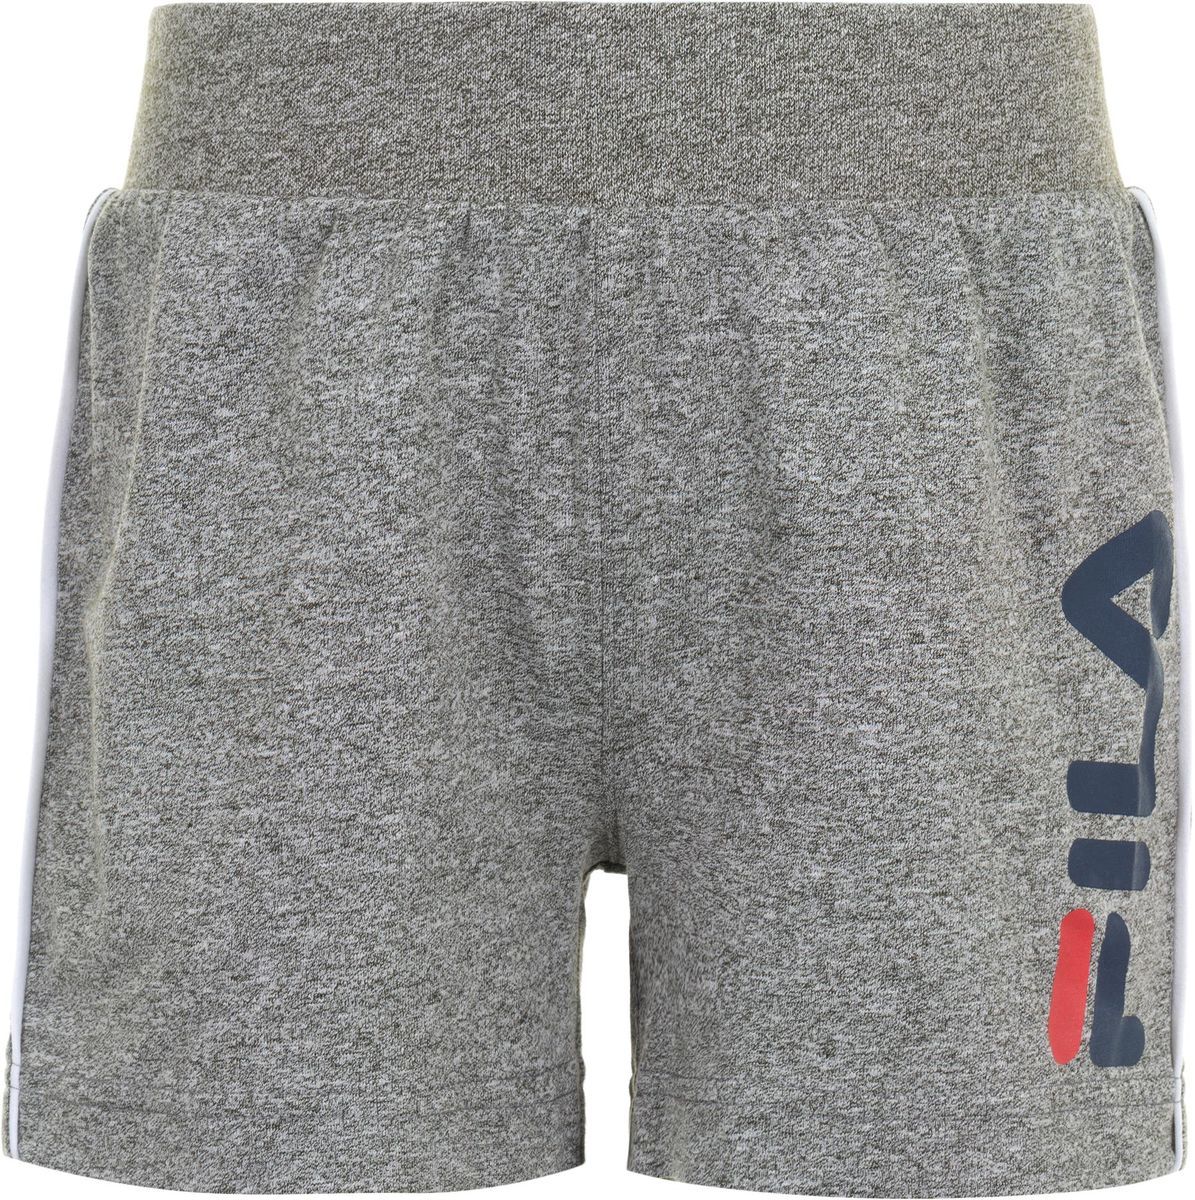    Fila Boy's Shorts, : . S19AFLSHC01-2A.  104